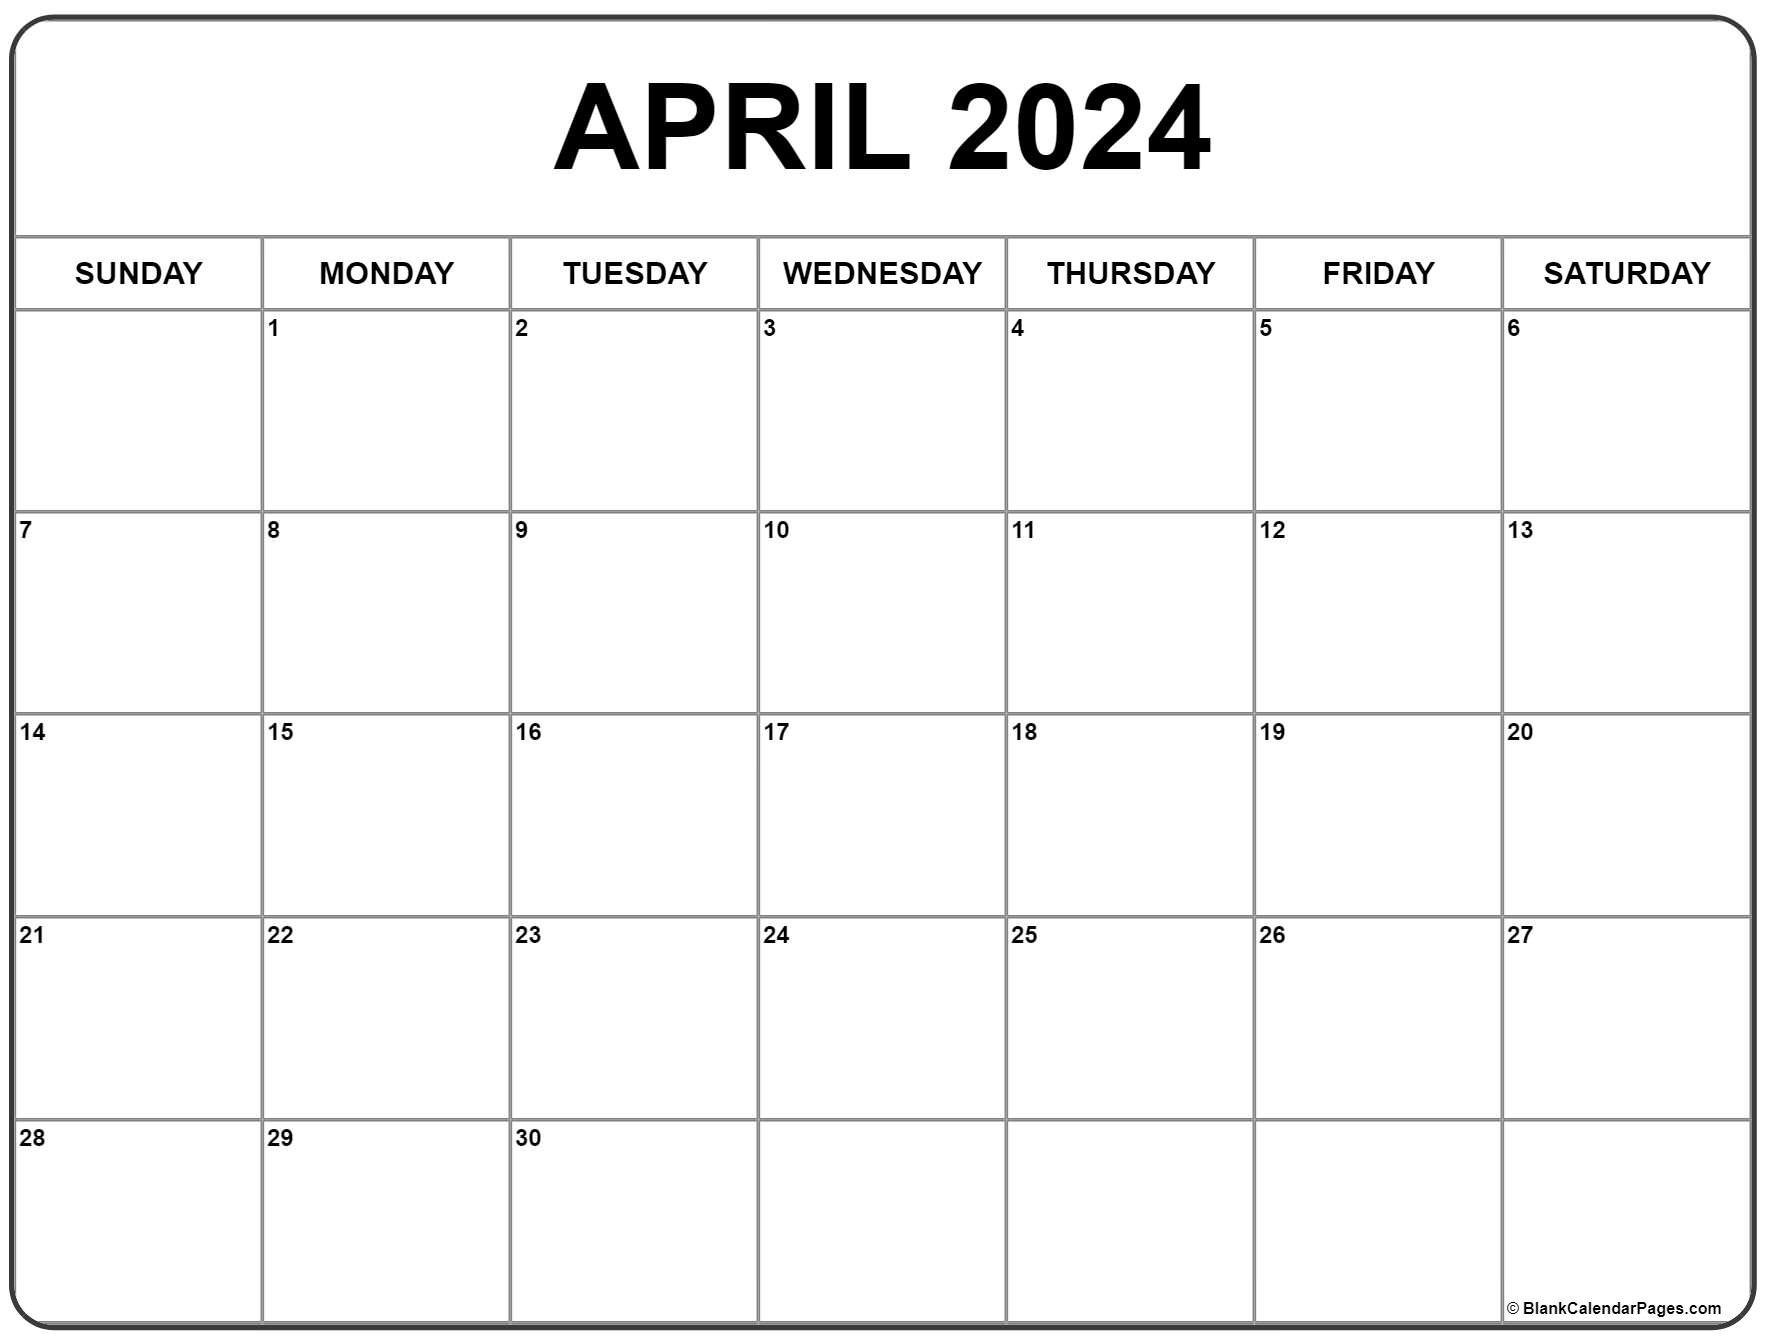 April 2024 Calendar | Free Printable Calendar for March And April 2024 Printable Calendar